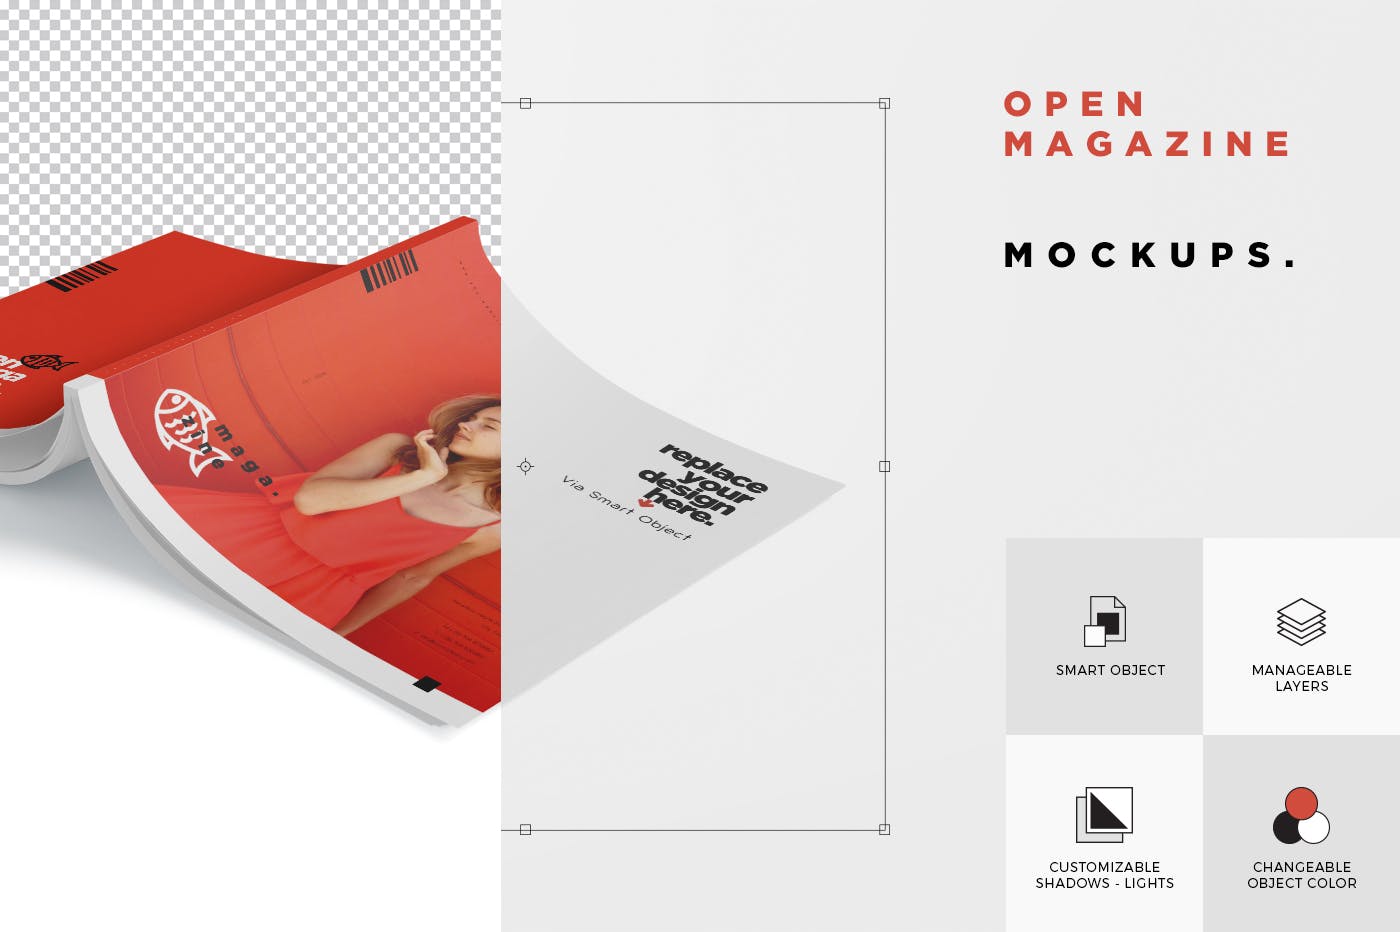 杂志内页排版设计印刷效果图样机 Open Magazine Mockups插图(6)